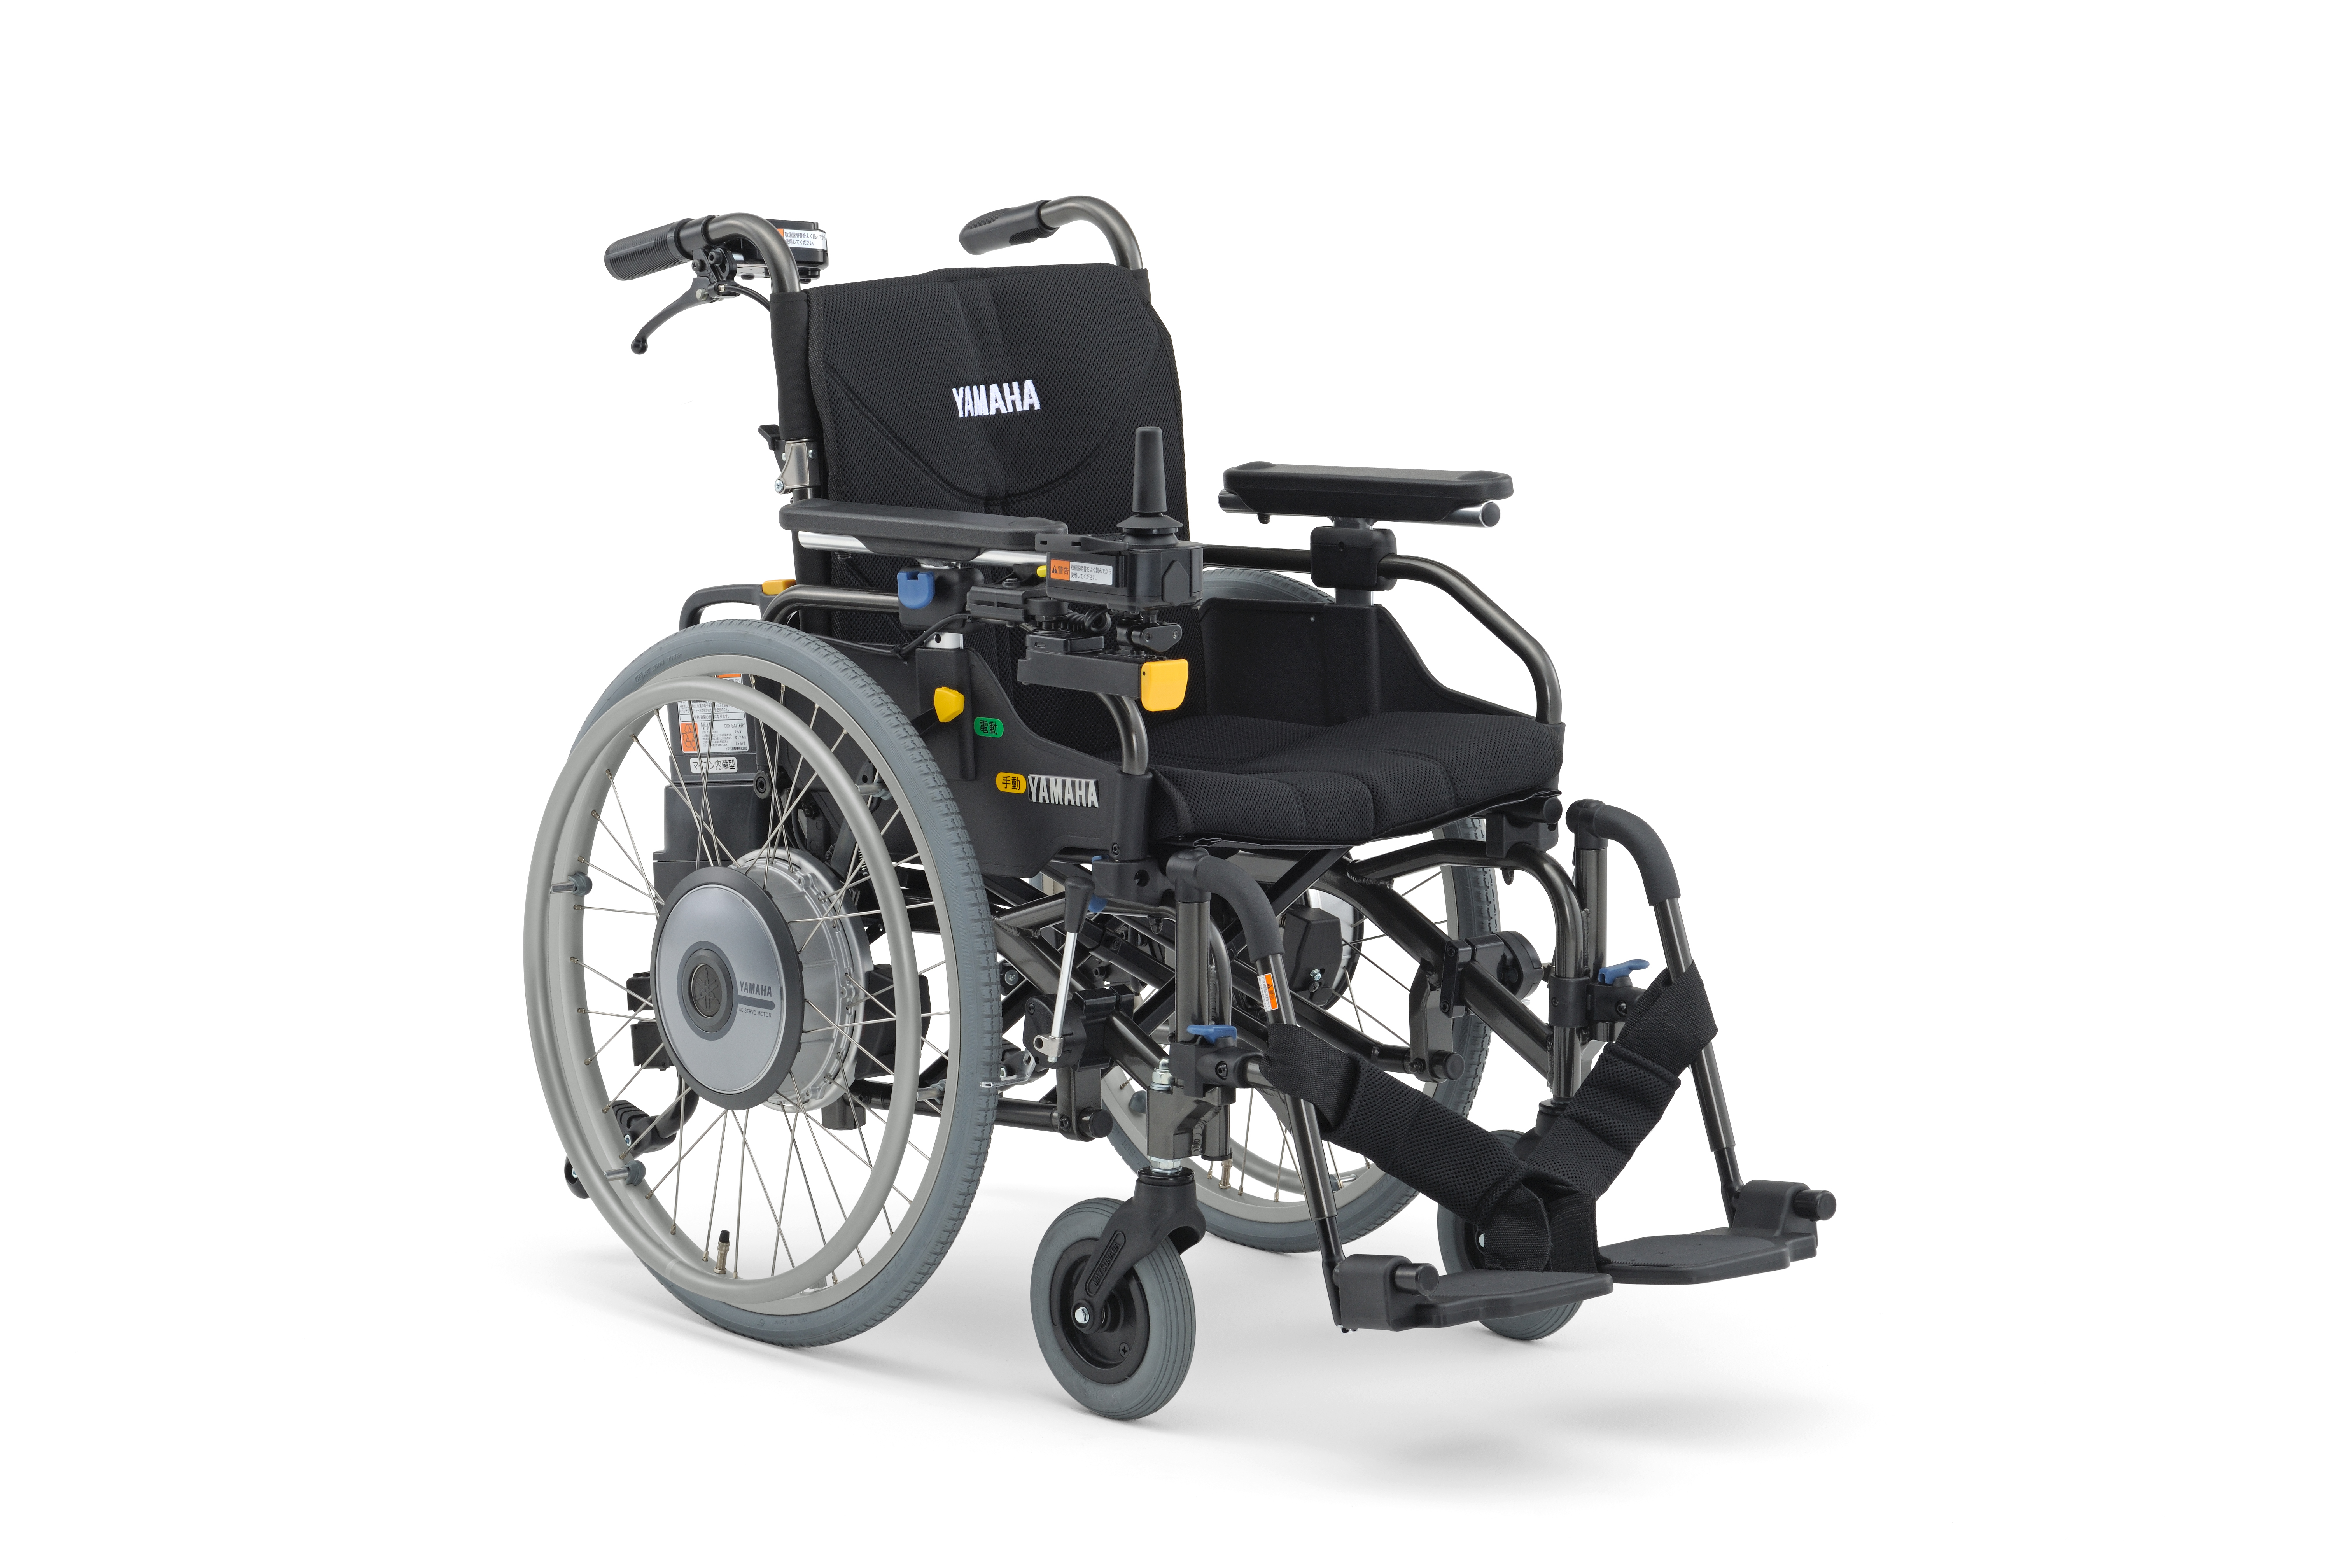 電動車椅子 JWアクティブPLUS+ Pタイプ